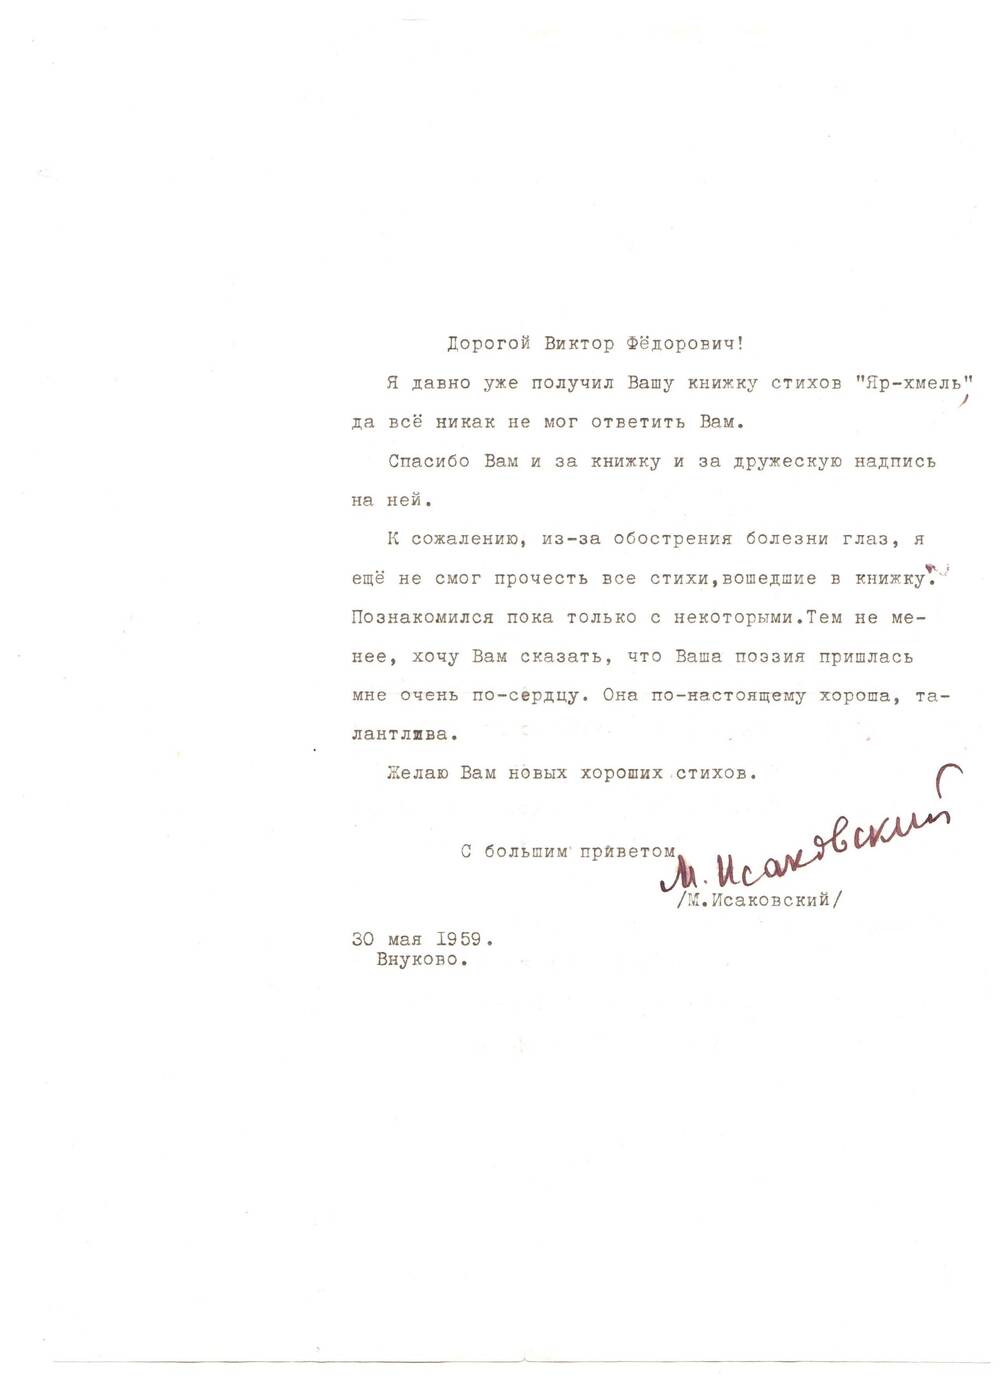 Письмо от М. Исаковского.